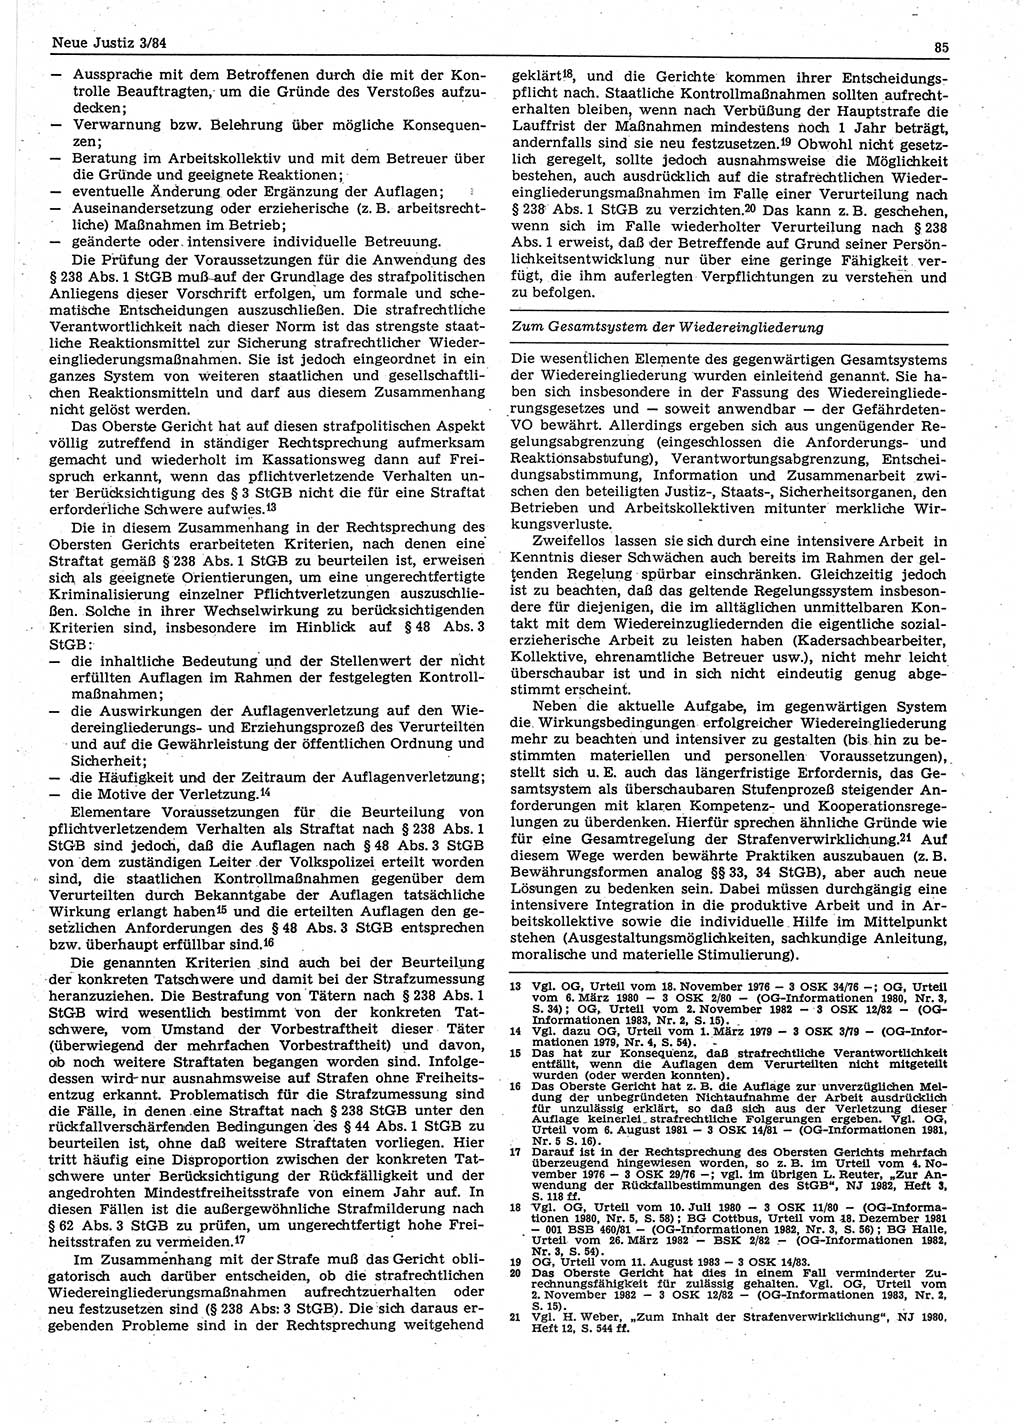 Neue Justiz (NJ), Zeitschrift für sozialistisches Recht und Gesetzlichkeit [Deutsche Demokratische Republik (DDR)], 38. Jahrgang 1984, Seite 85 (NJ DDR 1984, S. 85)